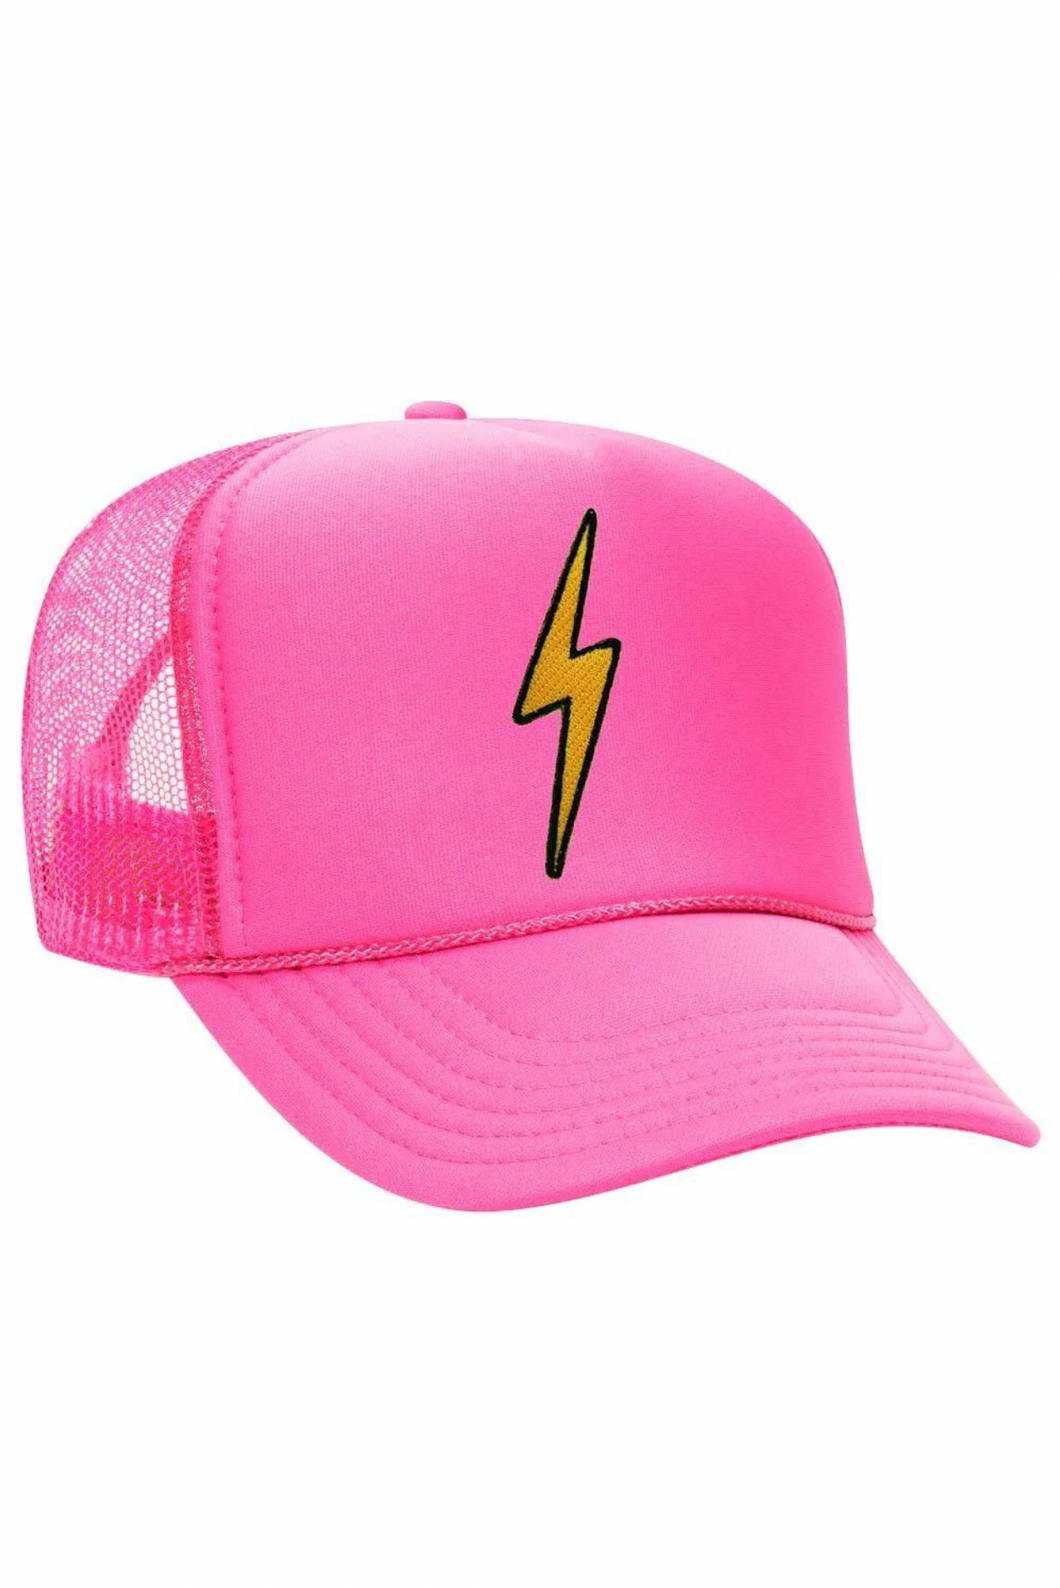 Aviator Nation Bolt Vintage Trucker Hat In Neon Pink